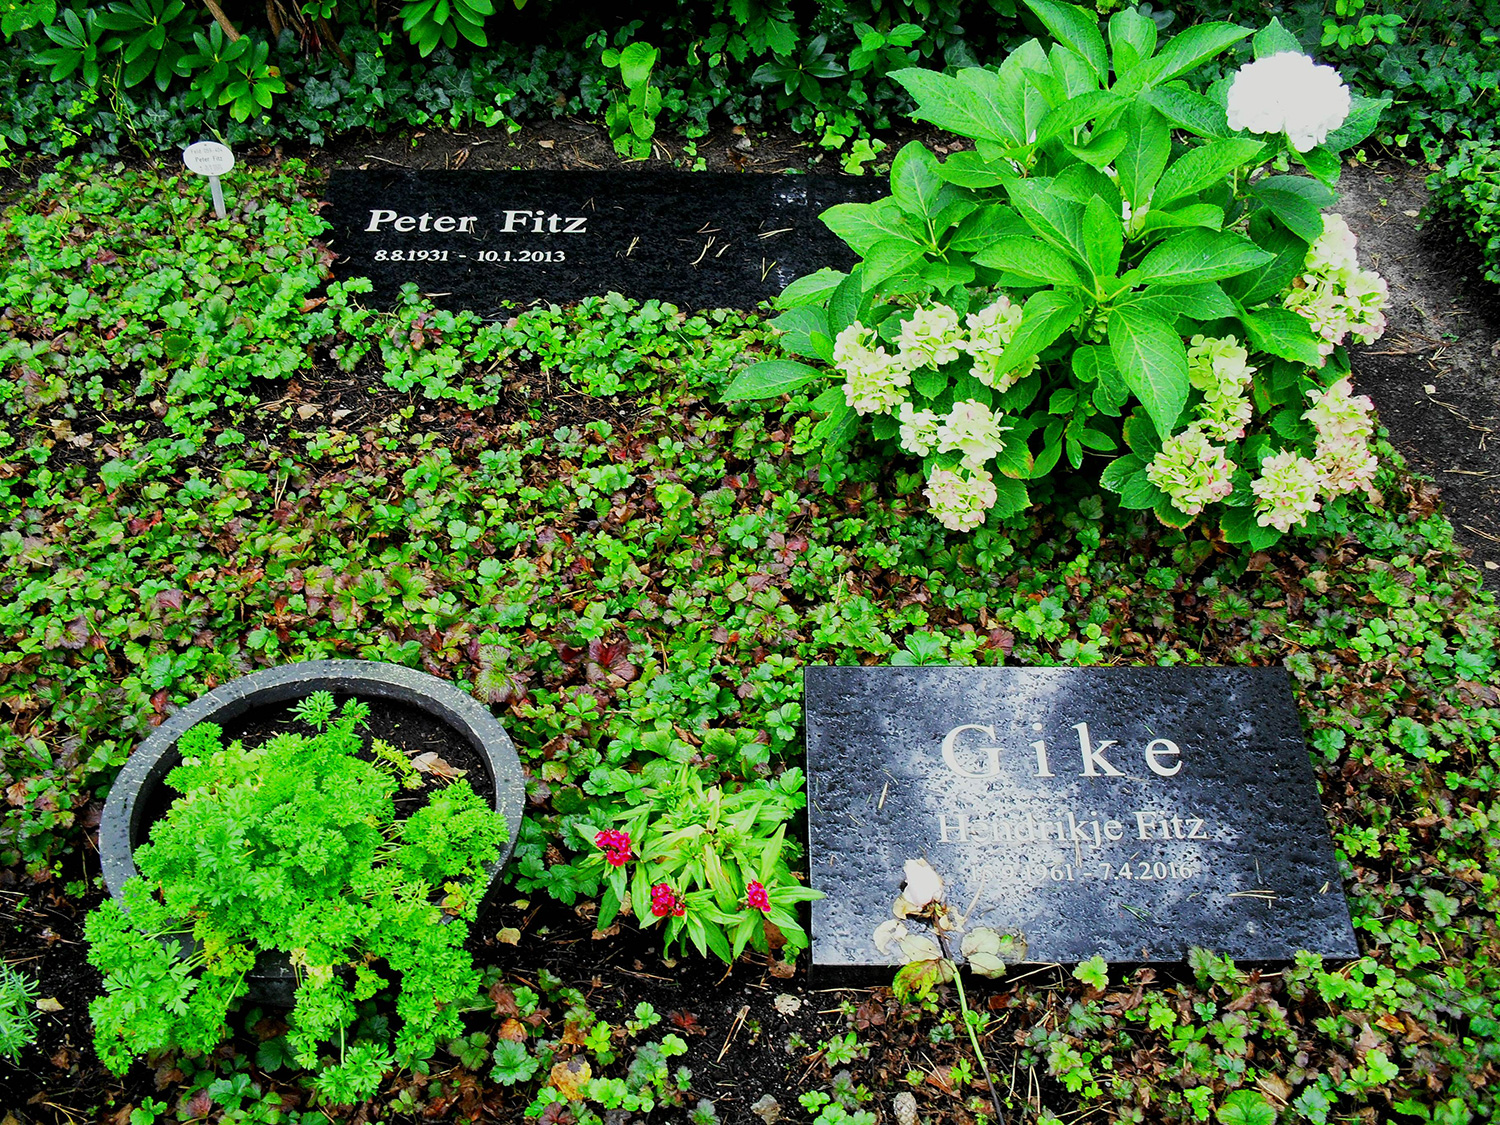 Das Grab von Hendrikje Fitz